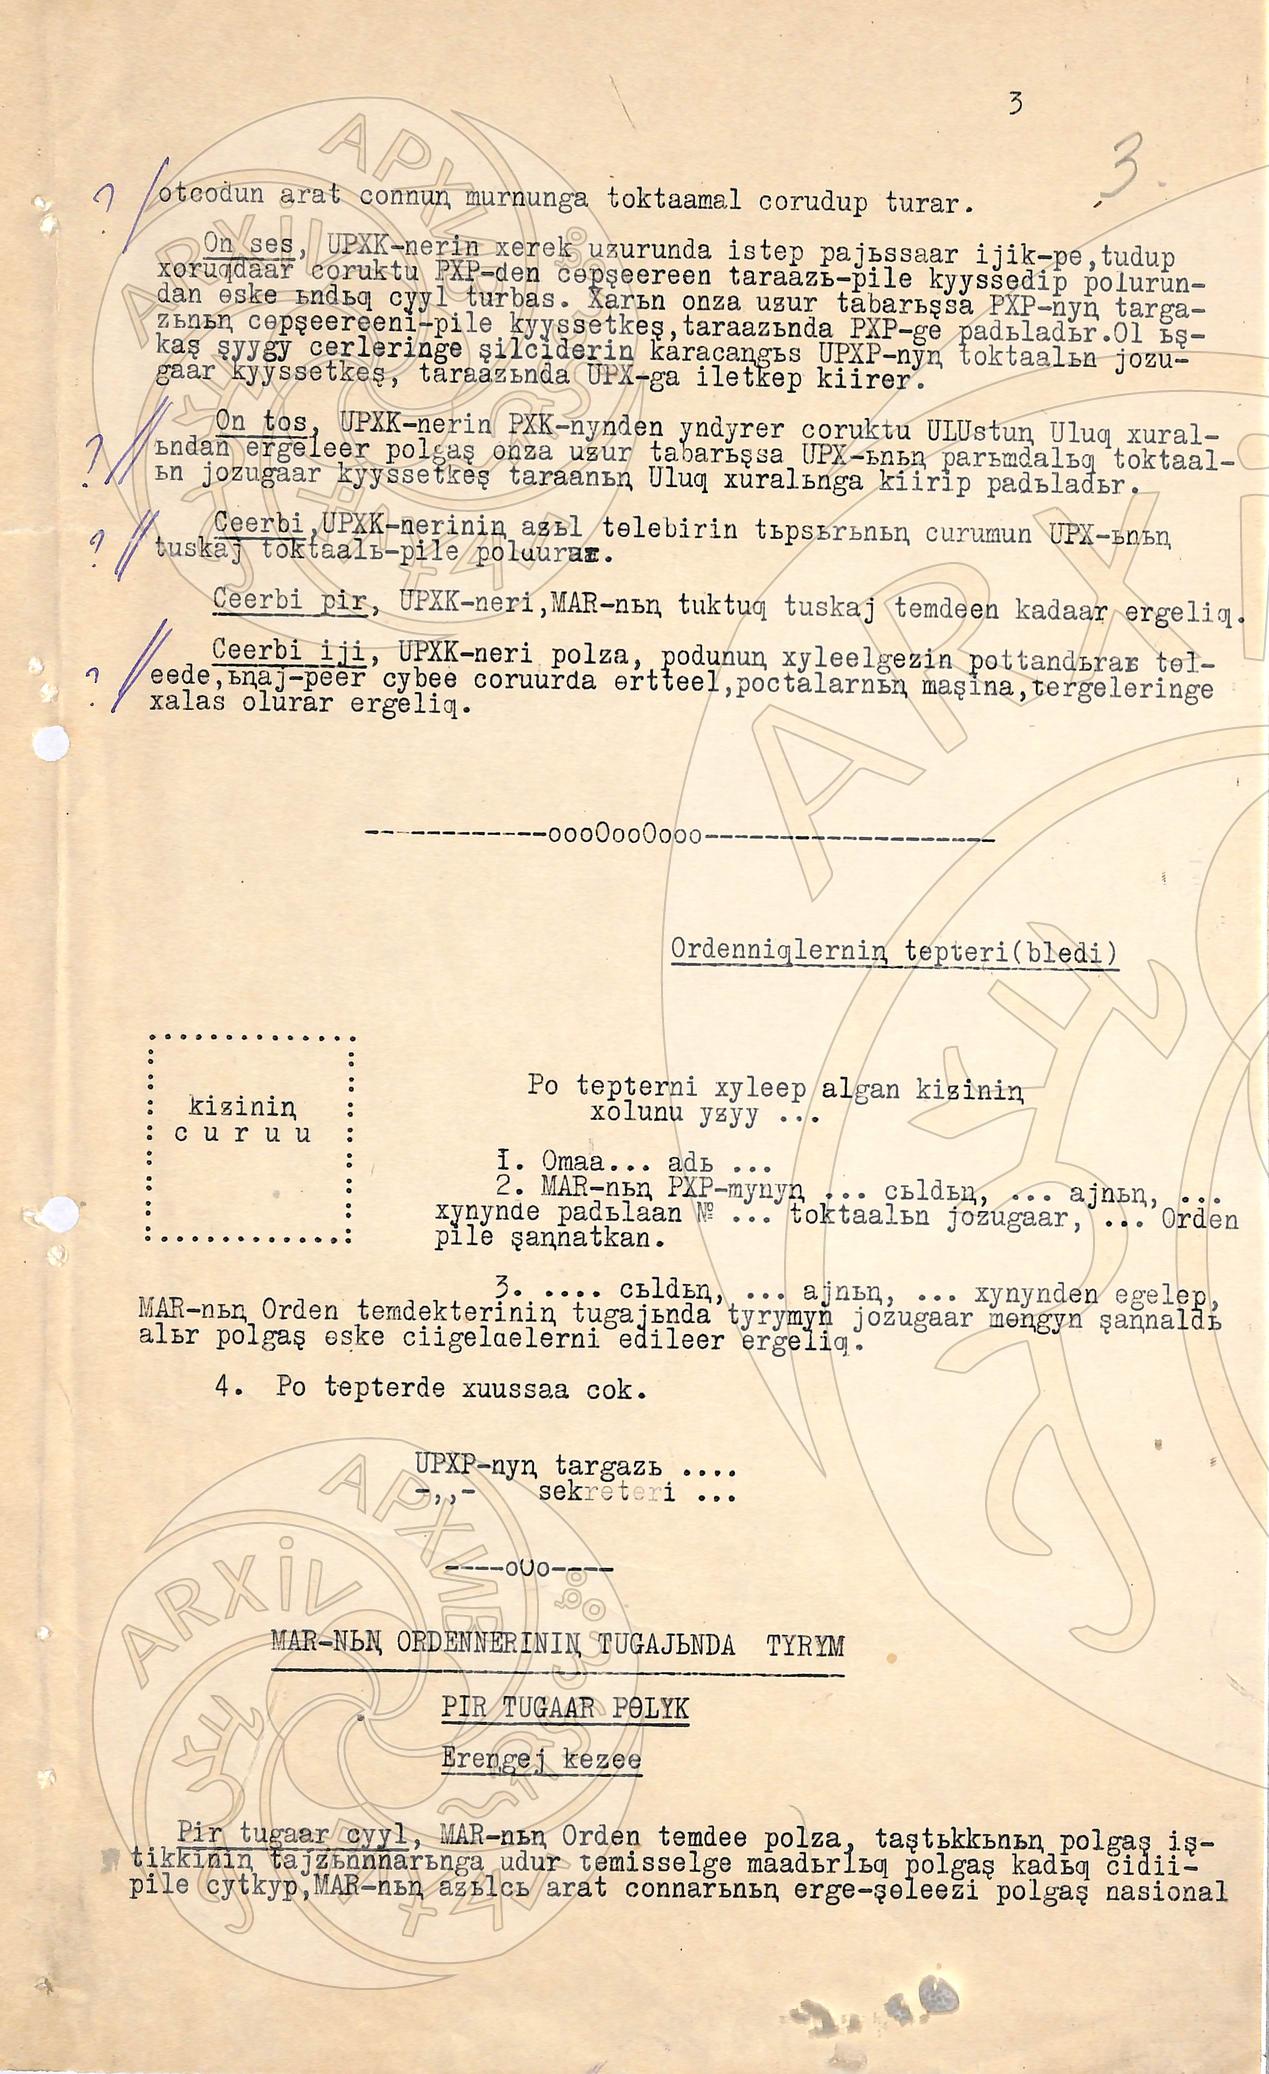 Официальные документы. Телеграммы руководителей партии и правительства тов. И.Сталину